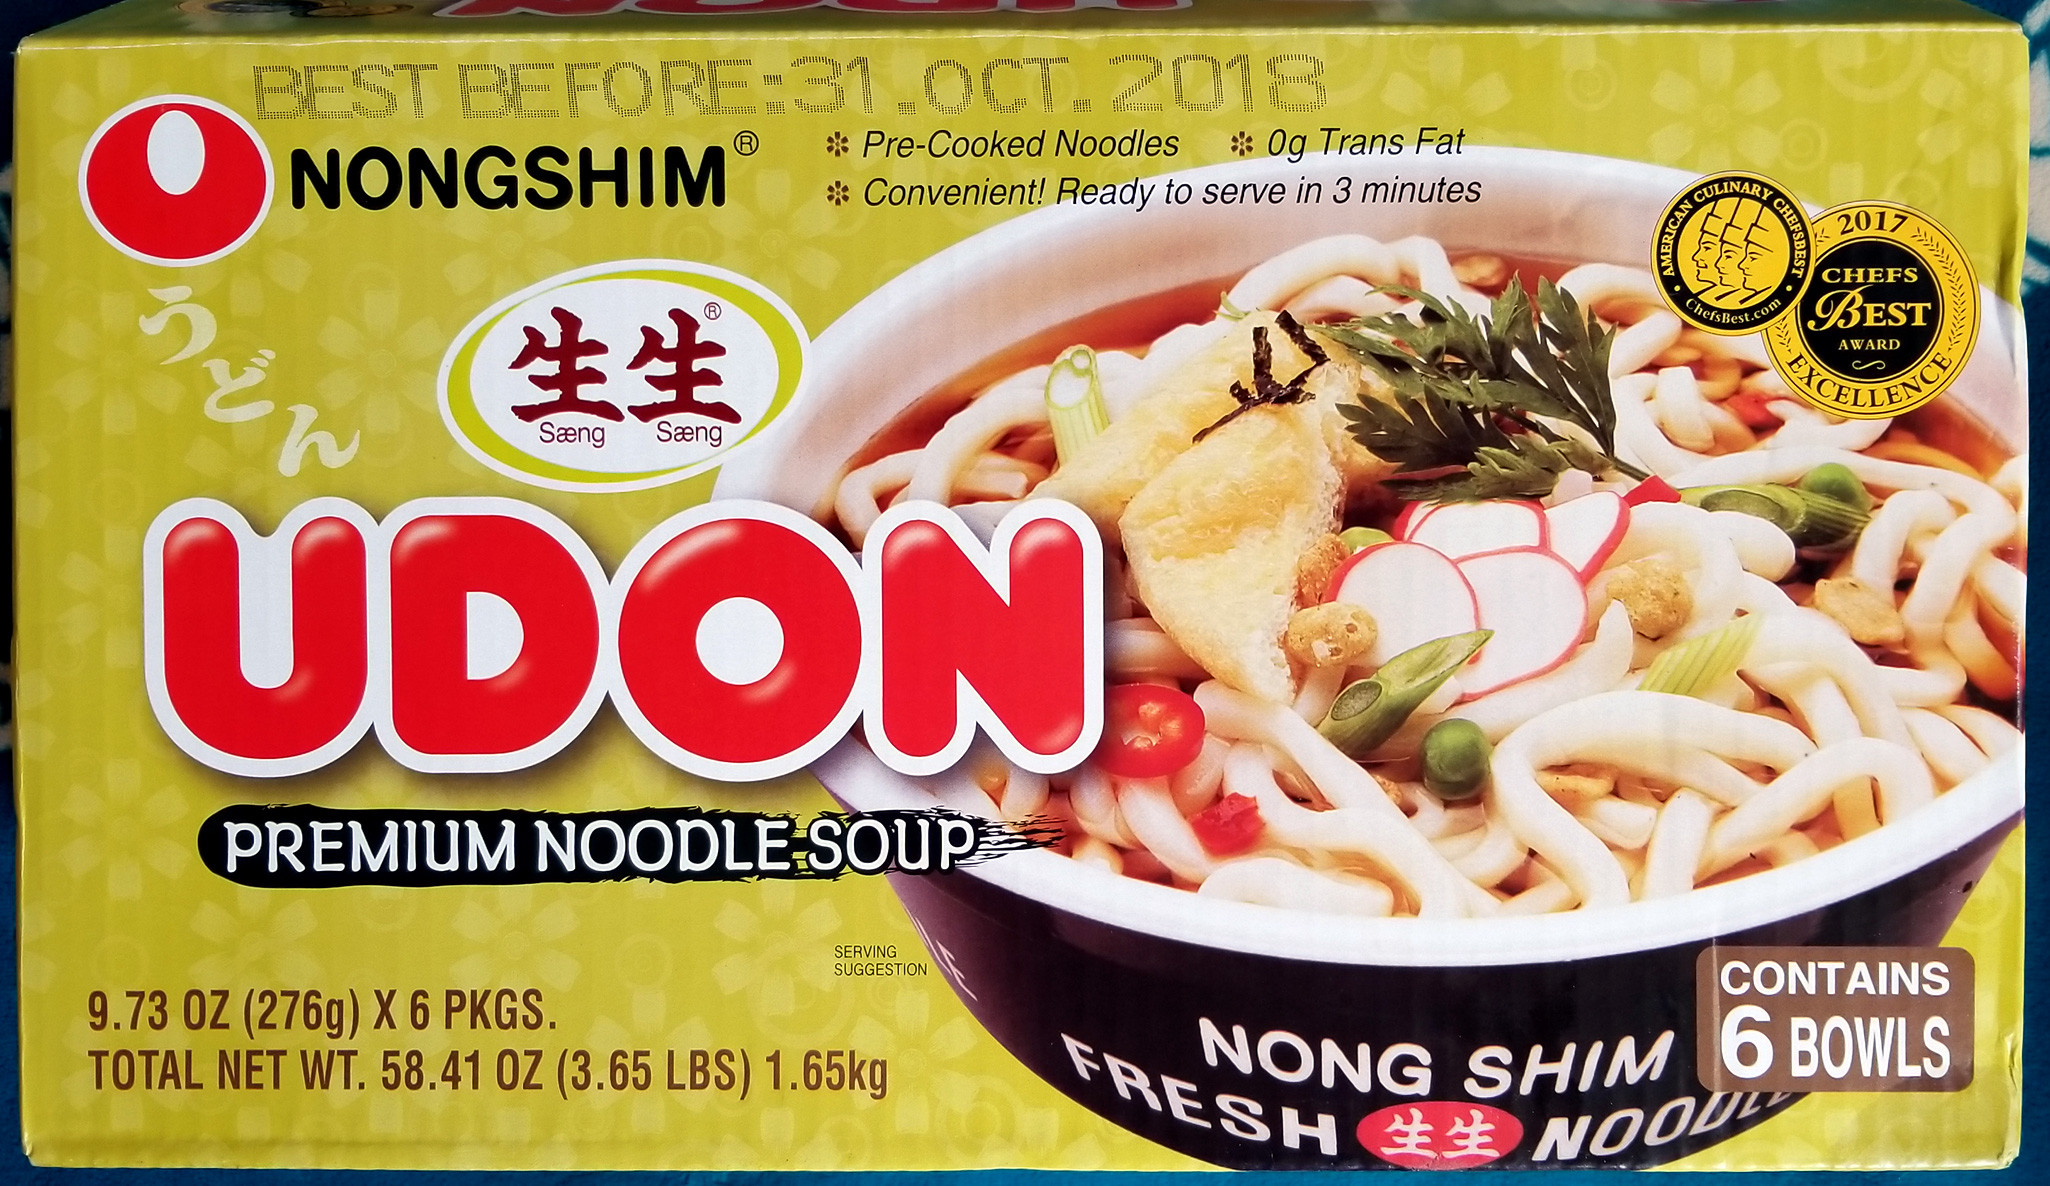 Costco Udon Noodles Unique Costco Eats Nongshim Udon Premium Noodle soup – Tasty island